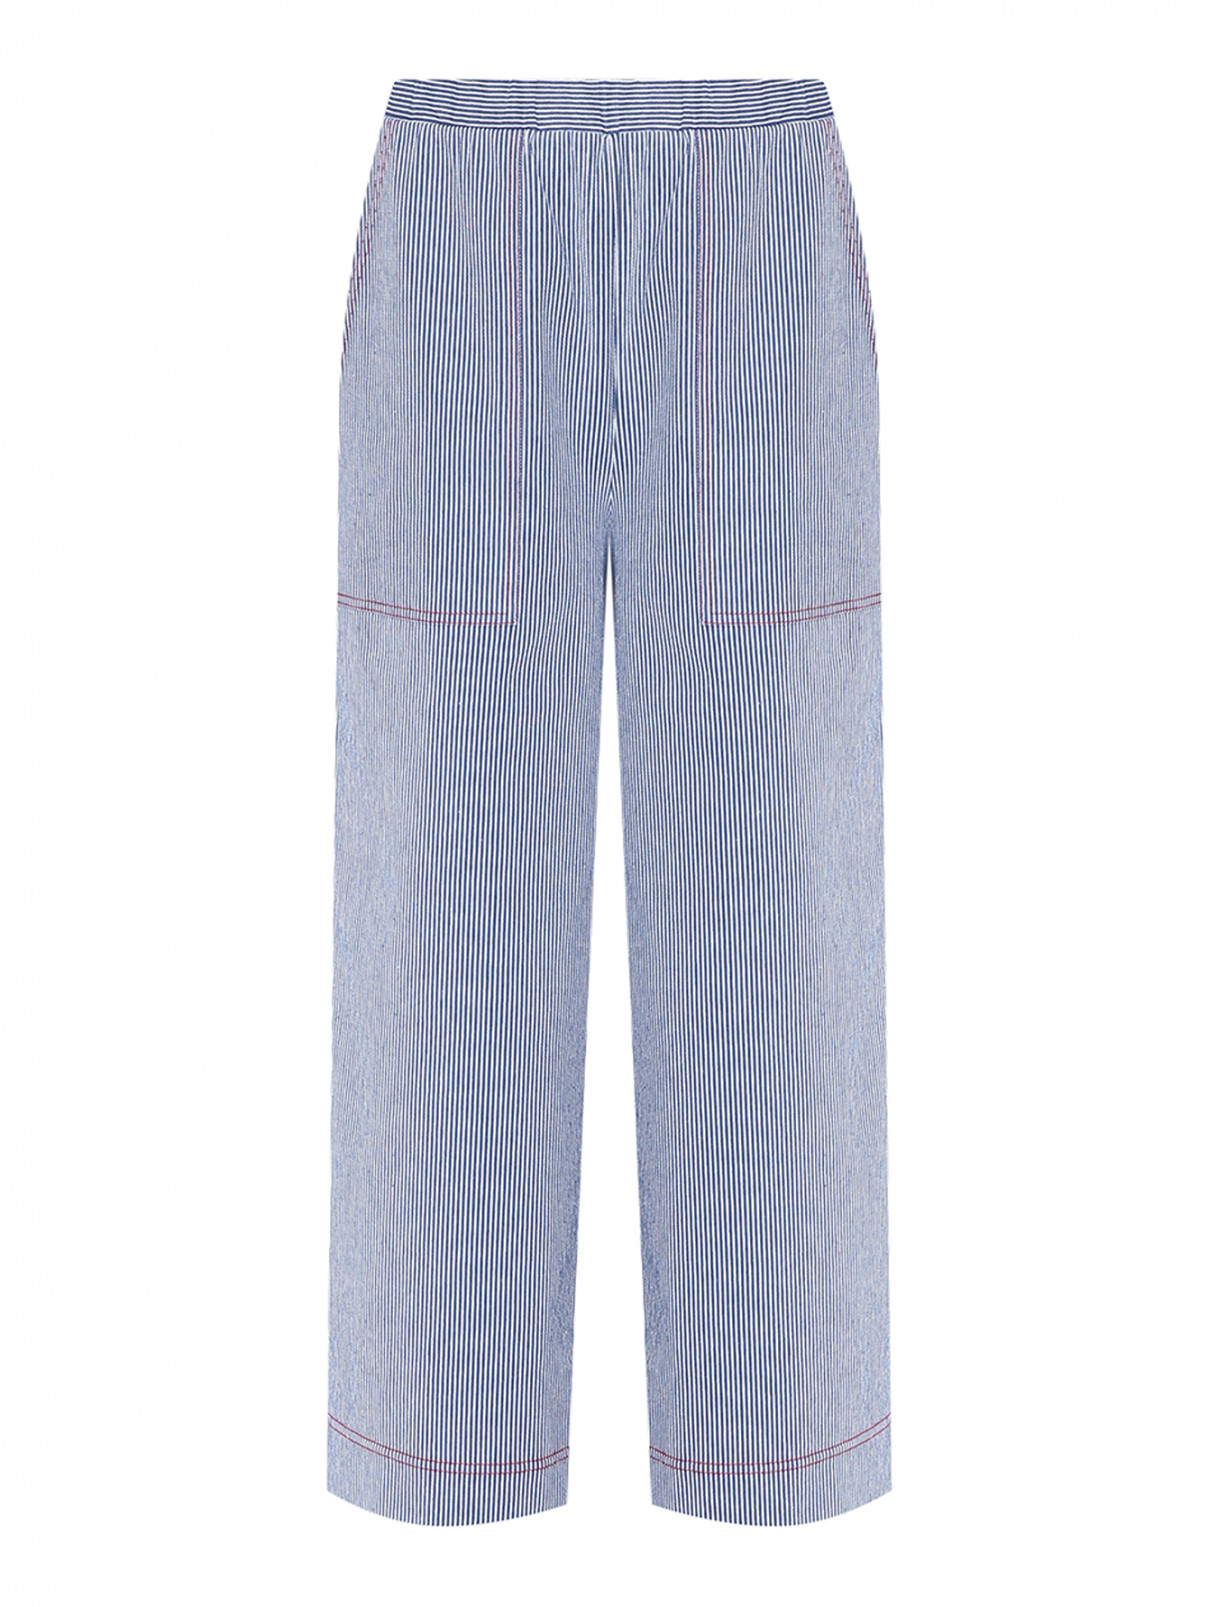 Трикотажные брюки с узором полоска Max&Co  –  Общий вид  – Цвет:  Узор